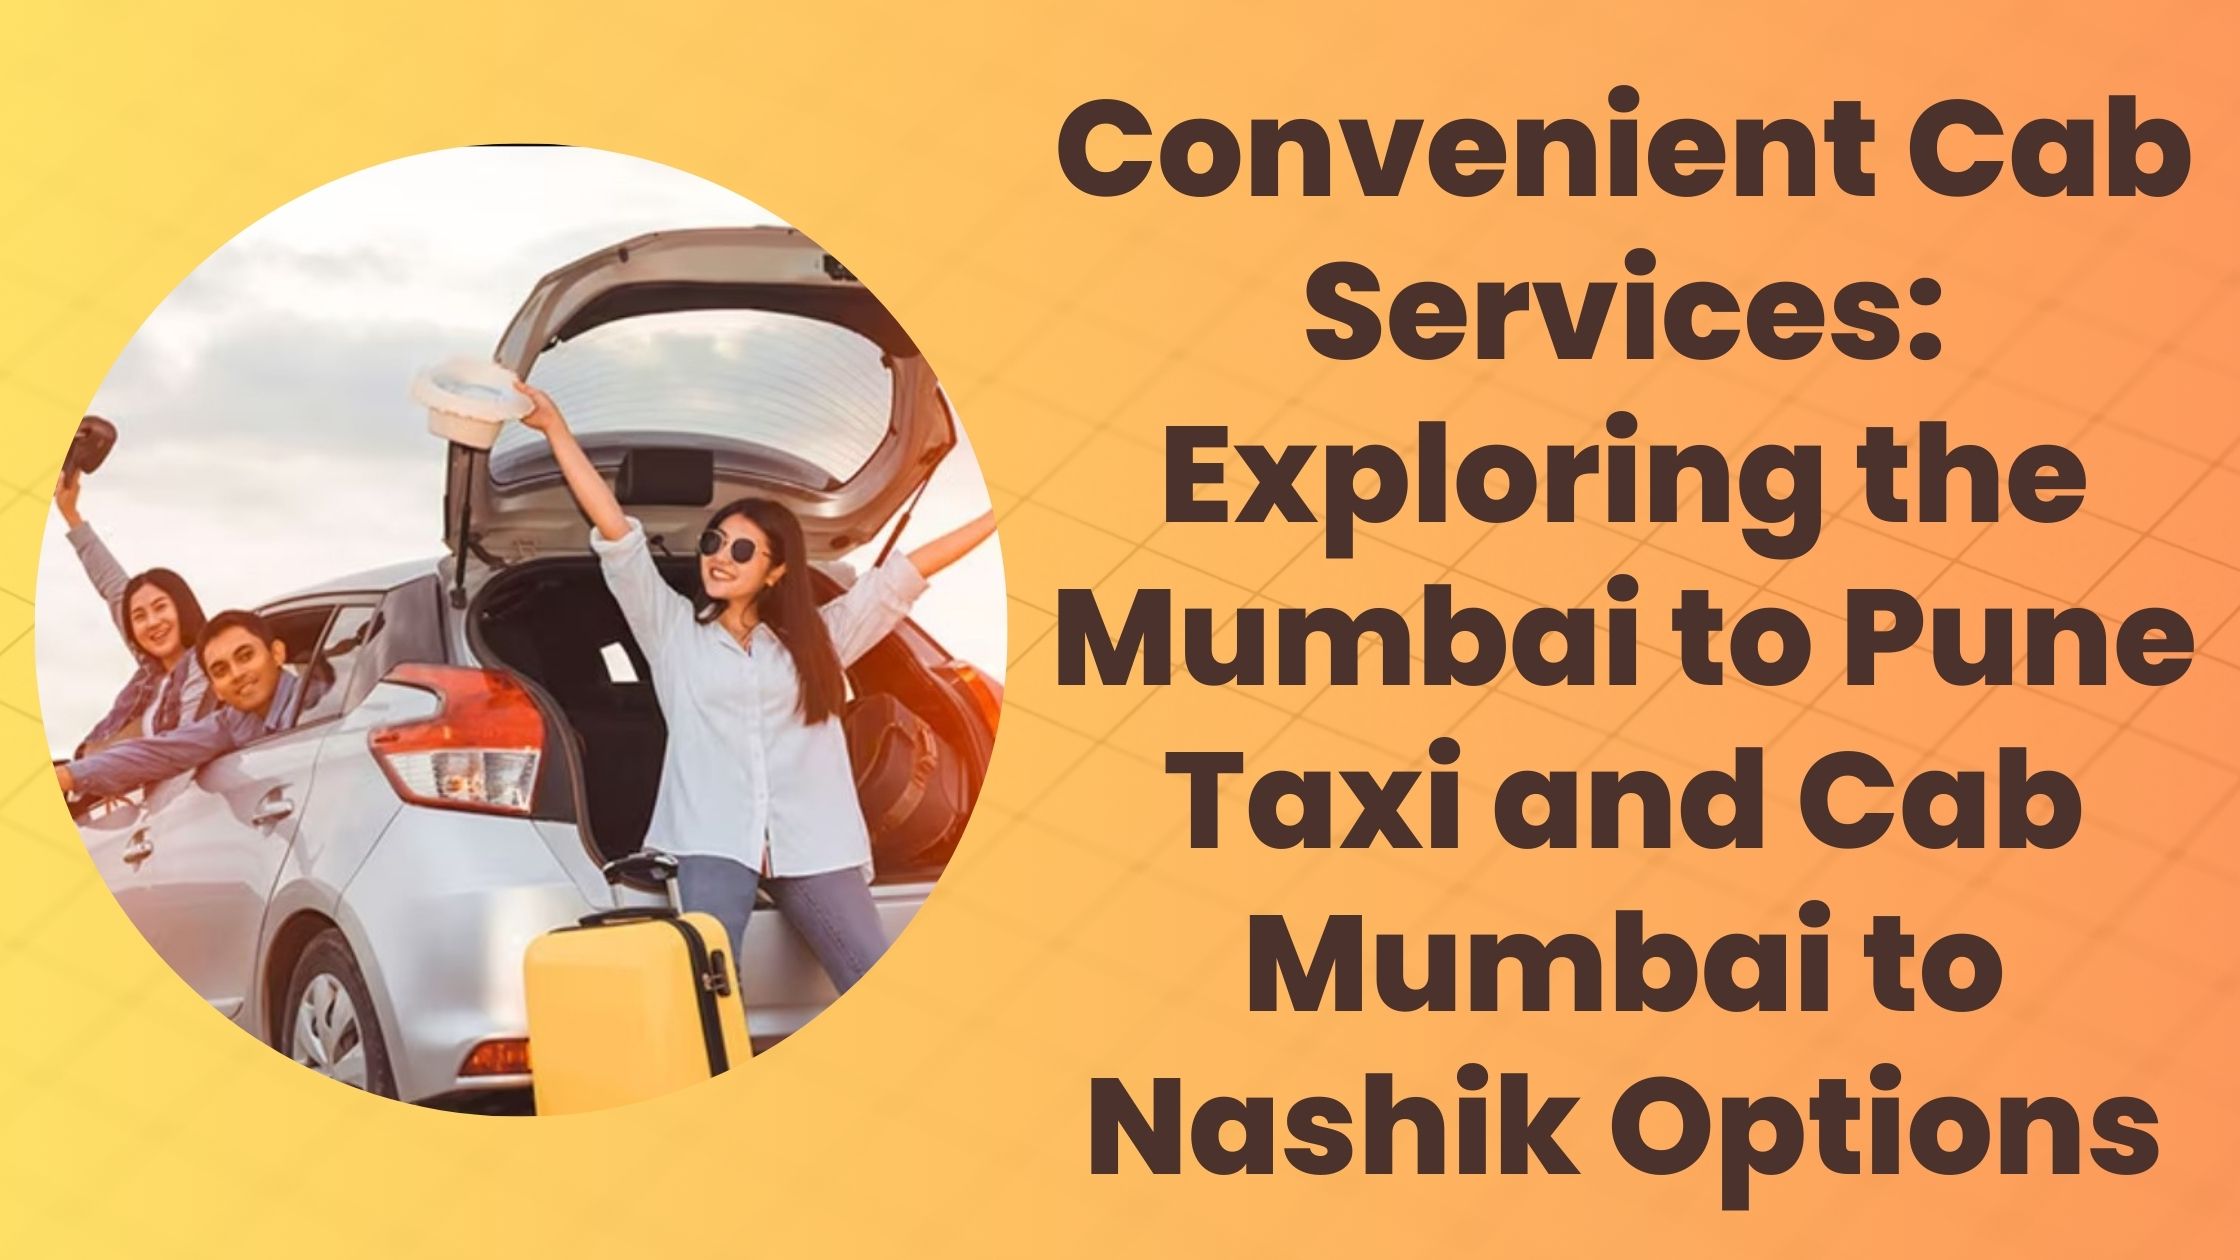 Convenient Cab Services: Exploring the Mumbai to Pune Taxi and Cab Mumbai to Nashik Options